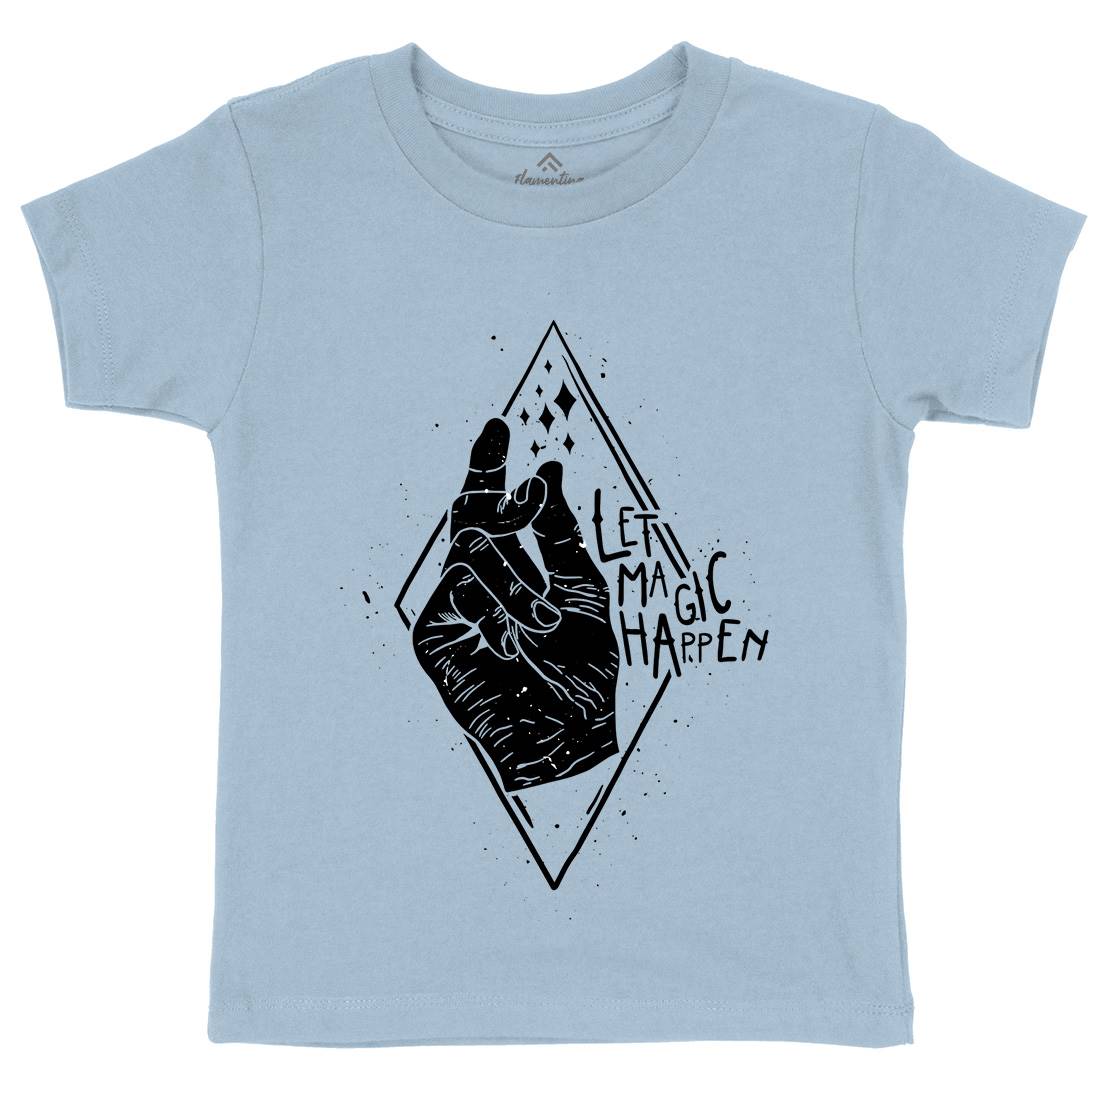 Let Magic Happen Kids Crew Neck T-Shirt Quotes D469